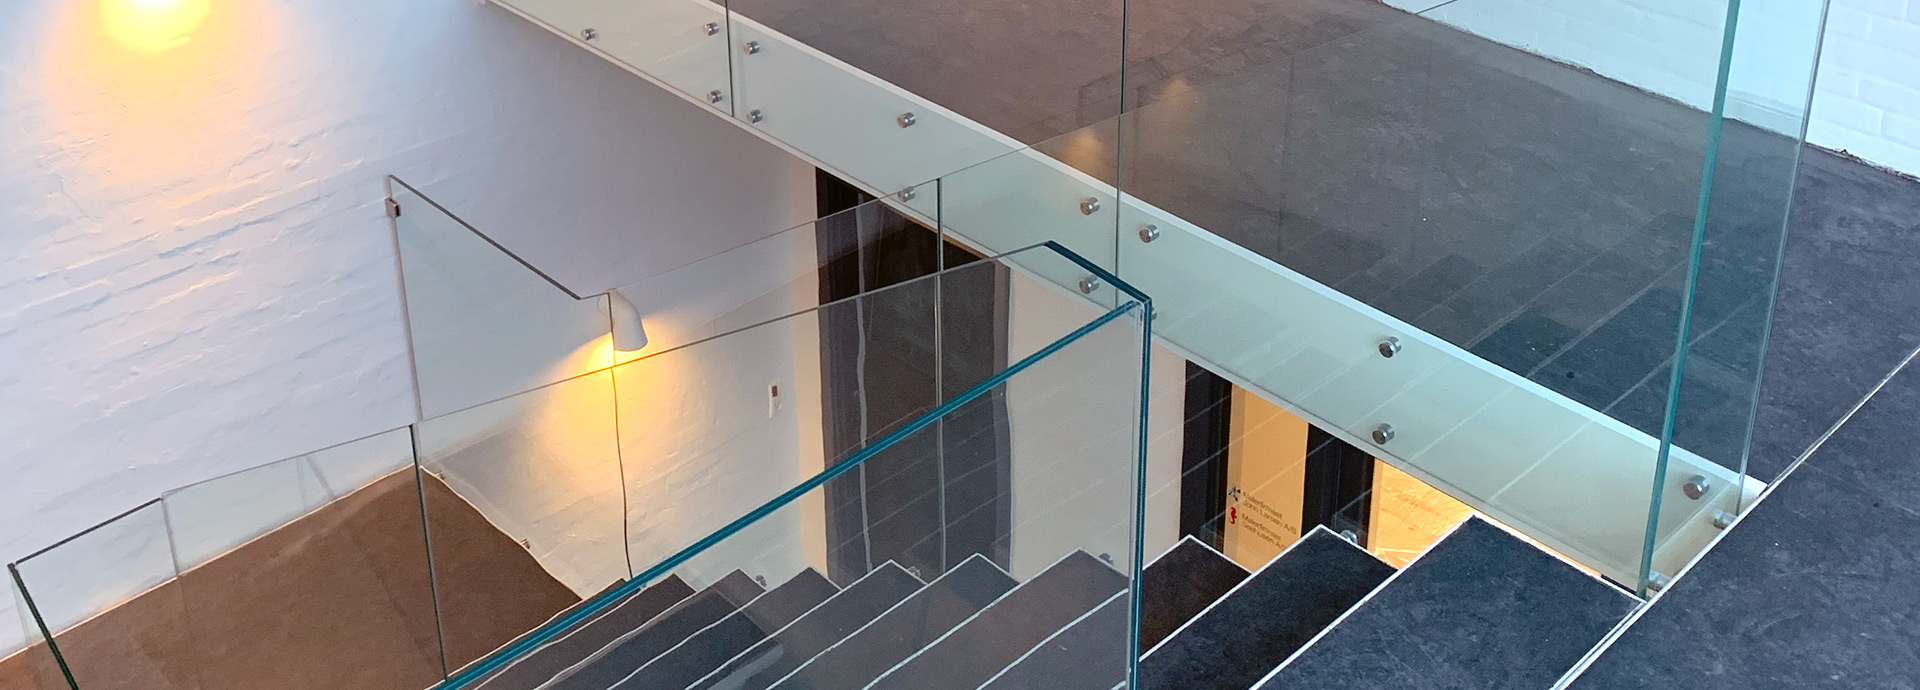 Moderne trappegelænder/trappeafskærmning i København, udført i et let og elegant design, i 10 mm hærdet & lamineret glas